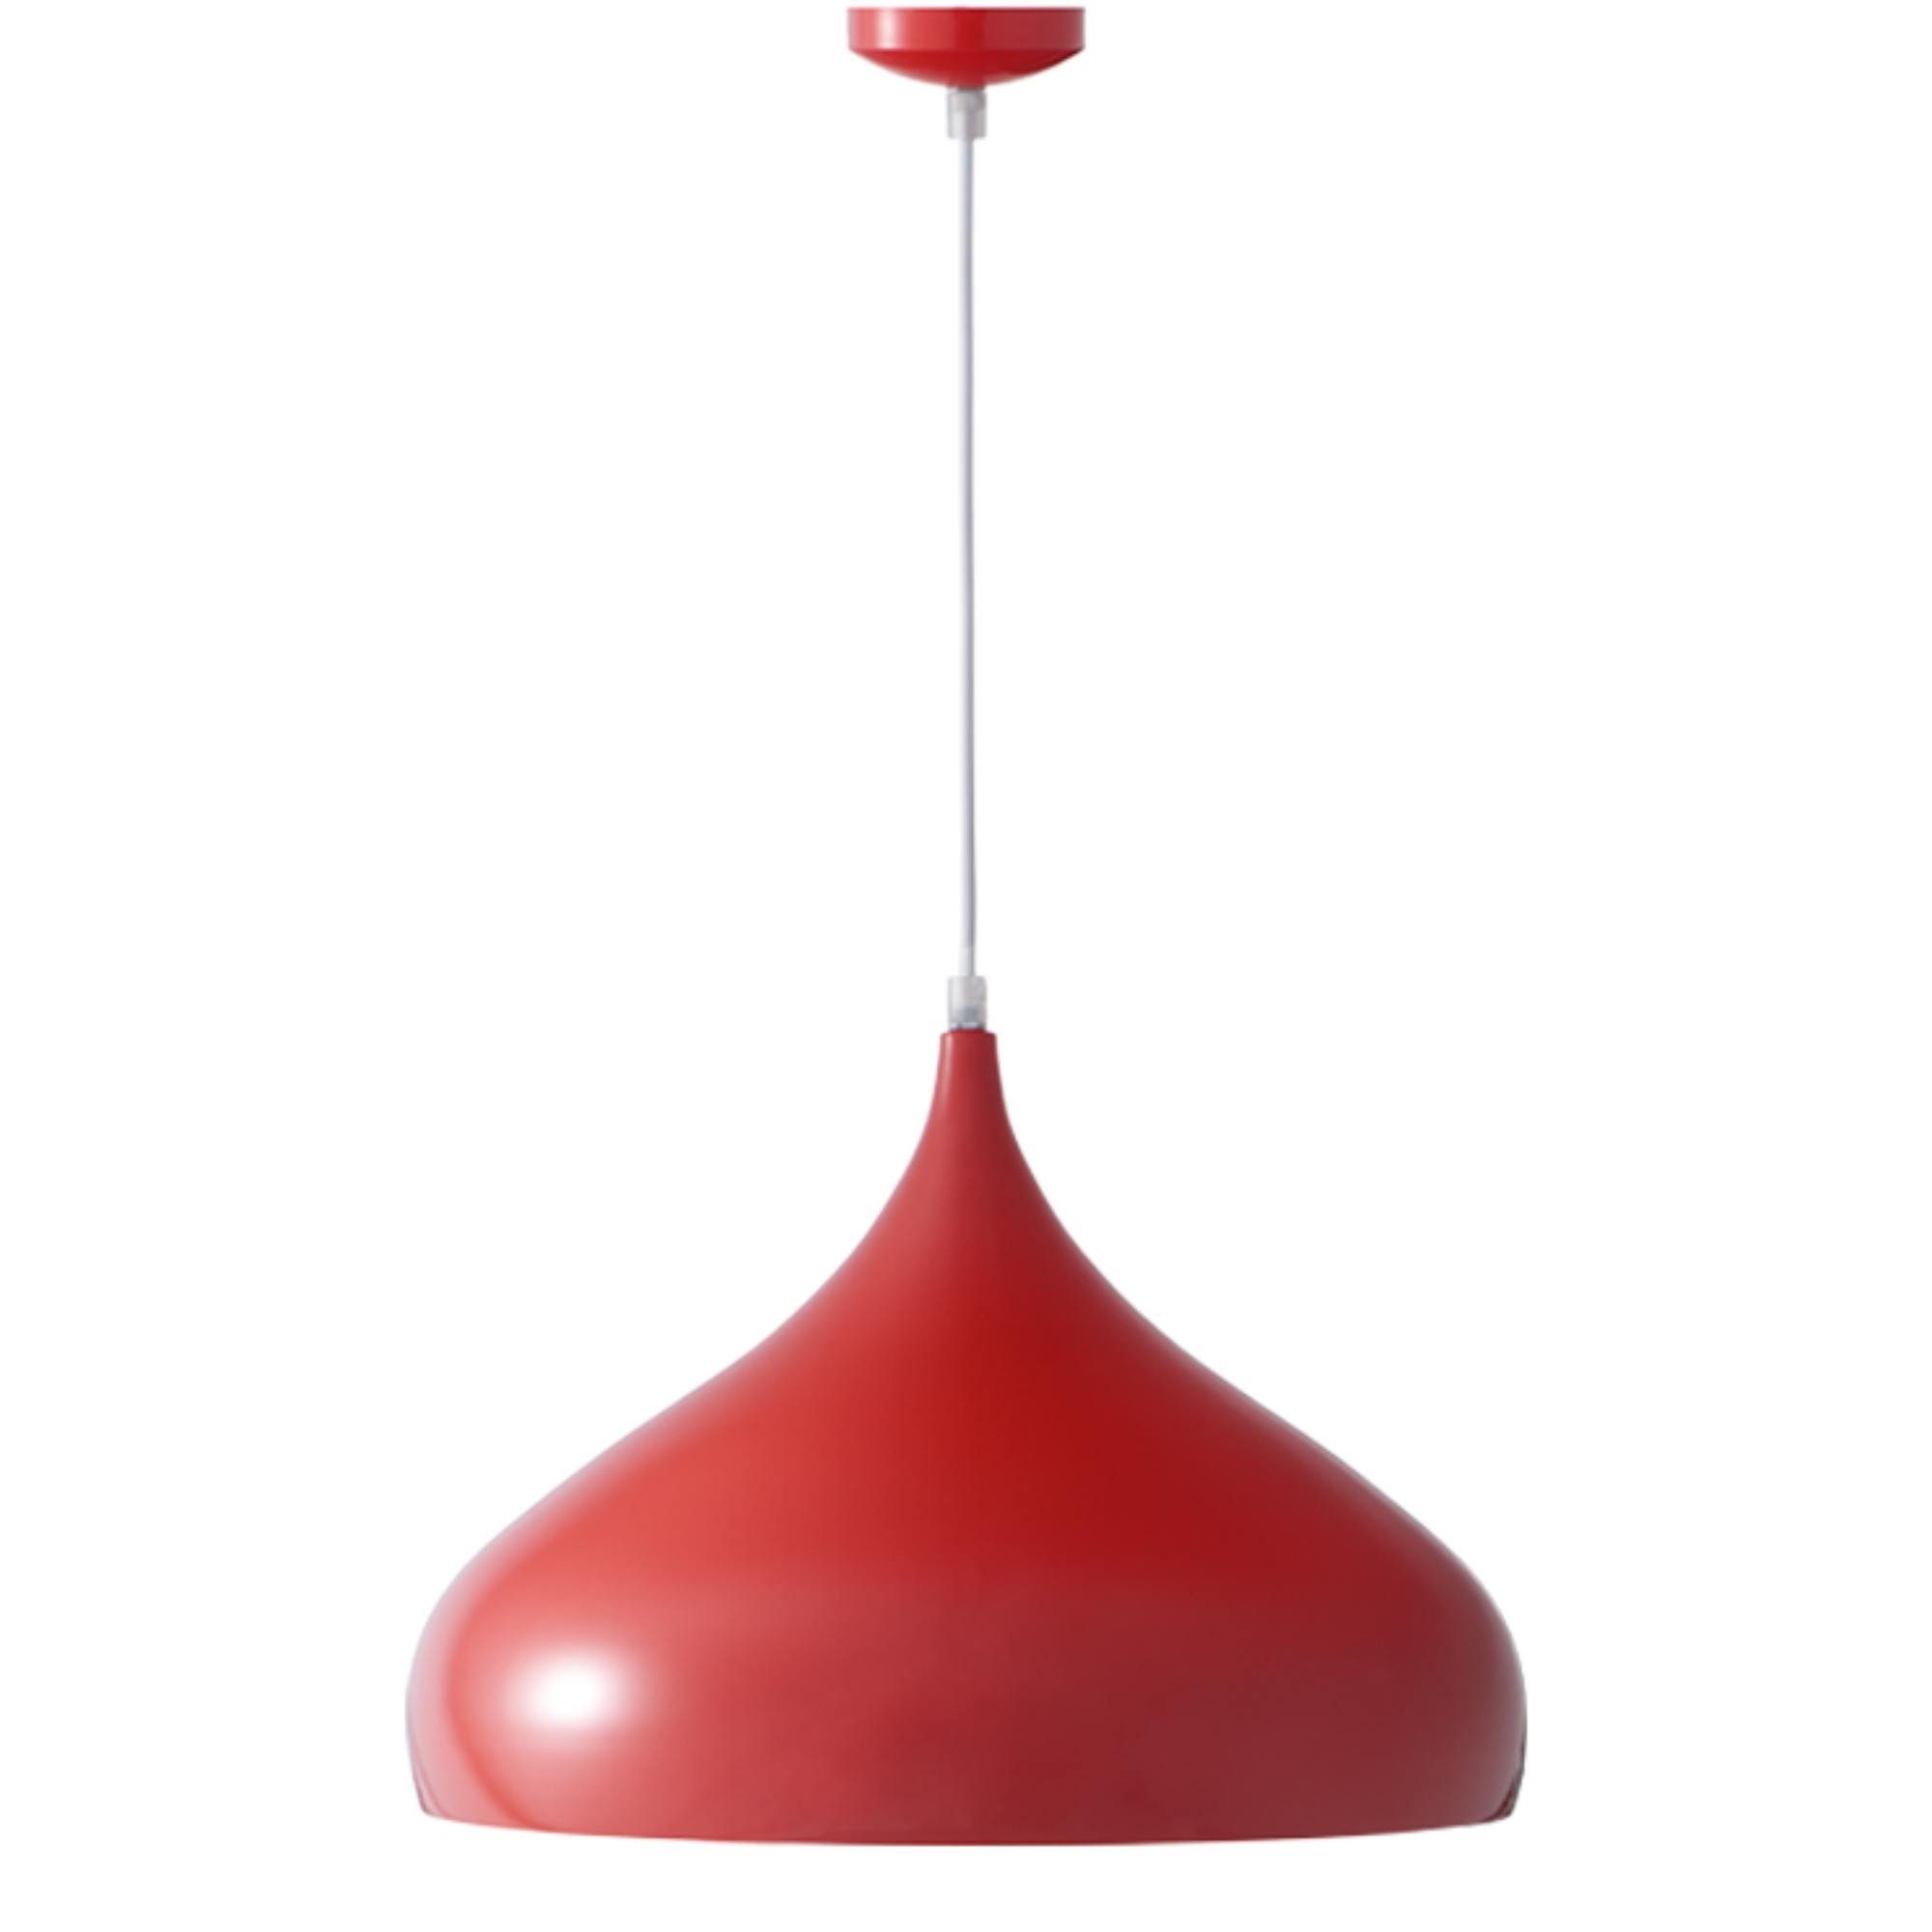 Konsimo Pendelleuchte TUBER Hängeleuchte, ohne Leuchtmittel, in einer roten, modernistischen Farbe | Pendelleuchten